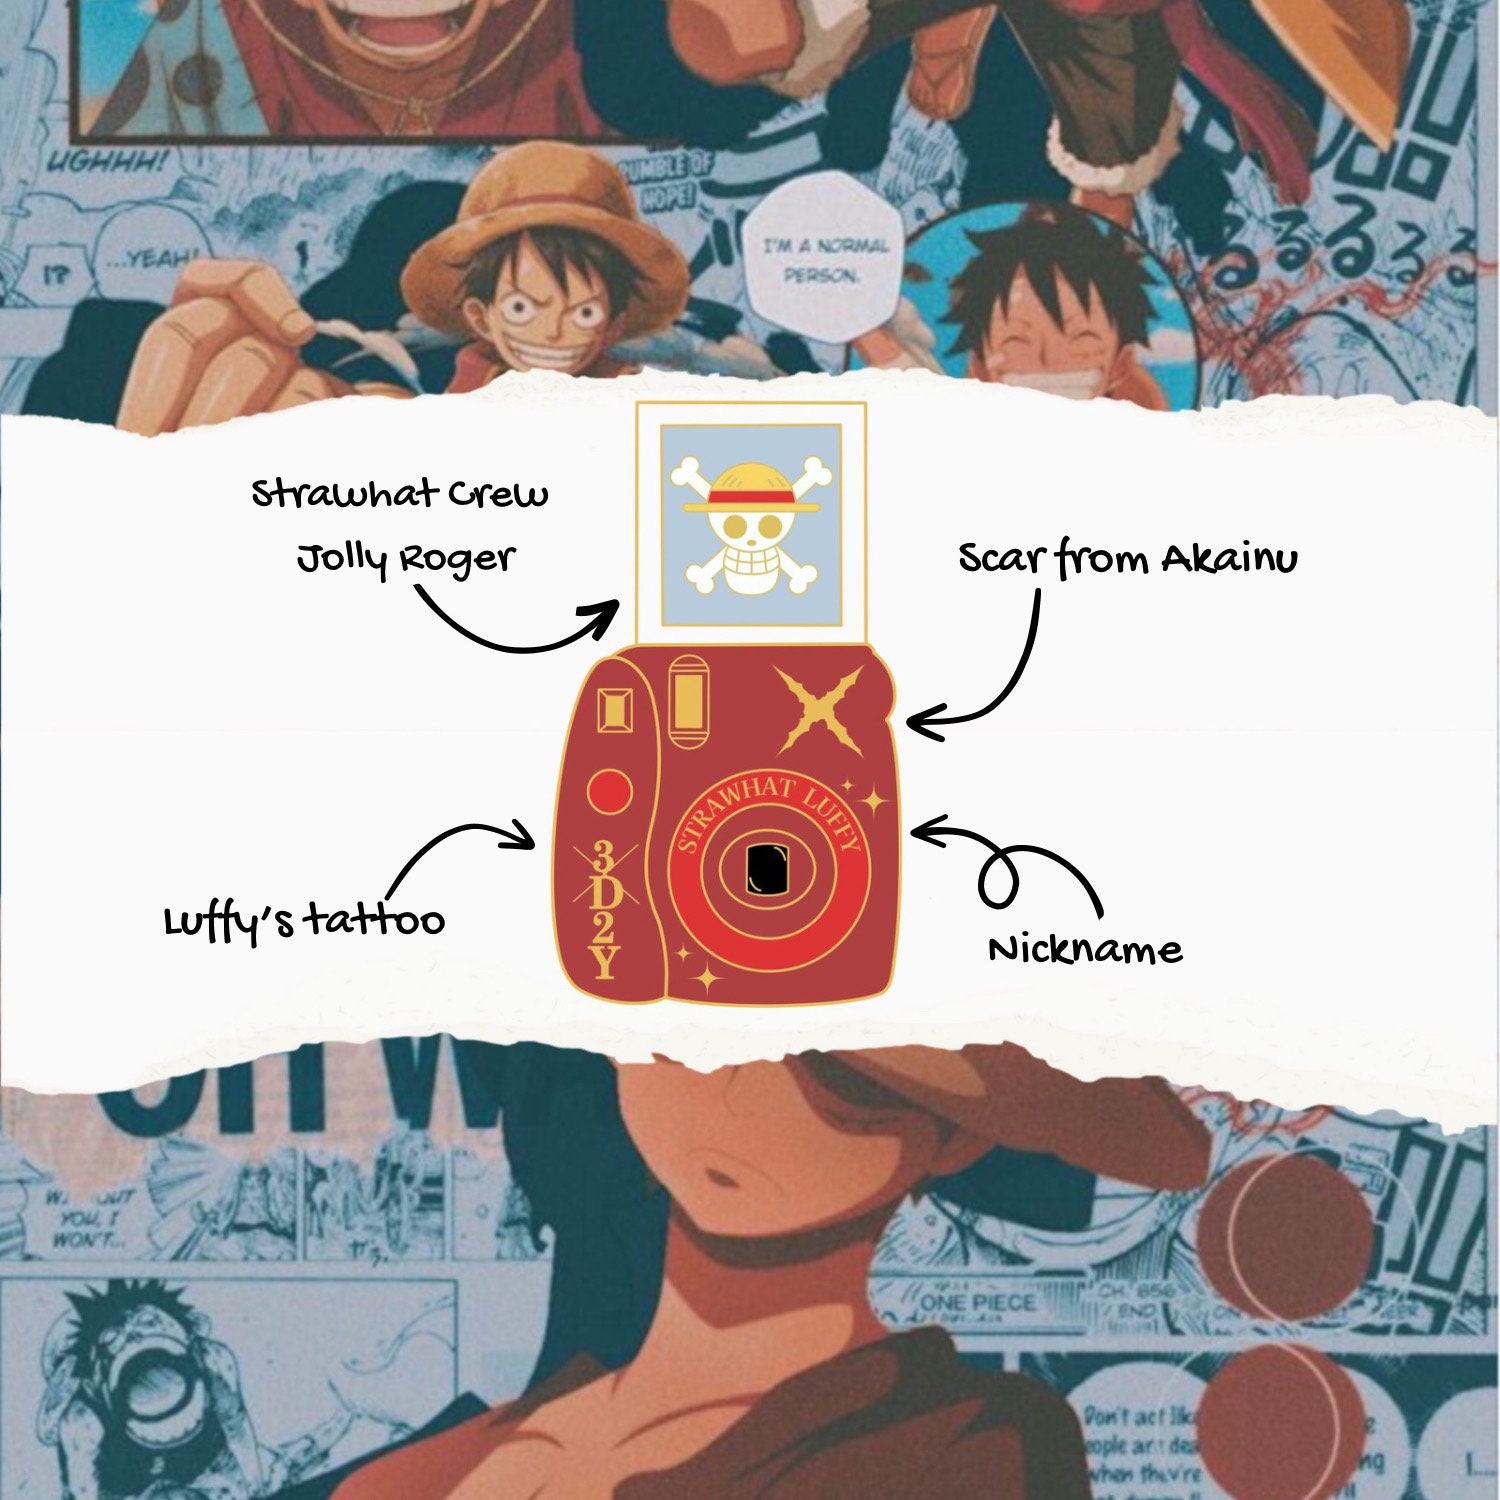 Pin de I LOVE ONE PIECE.. em One Piece☆